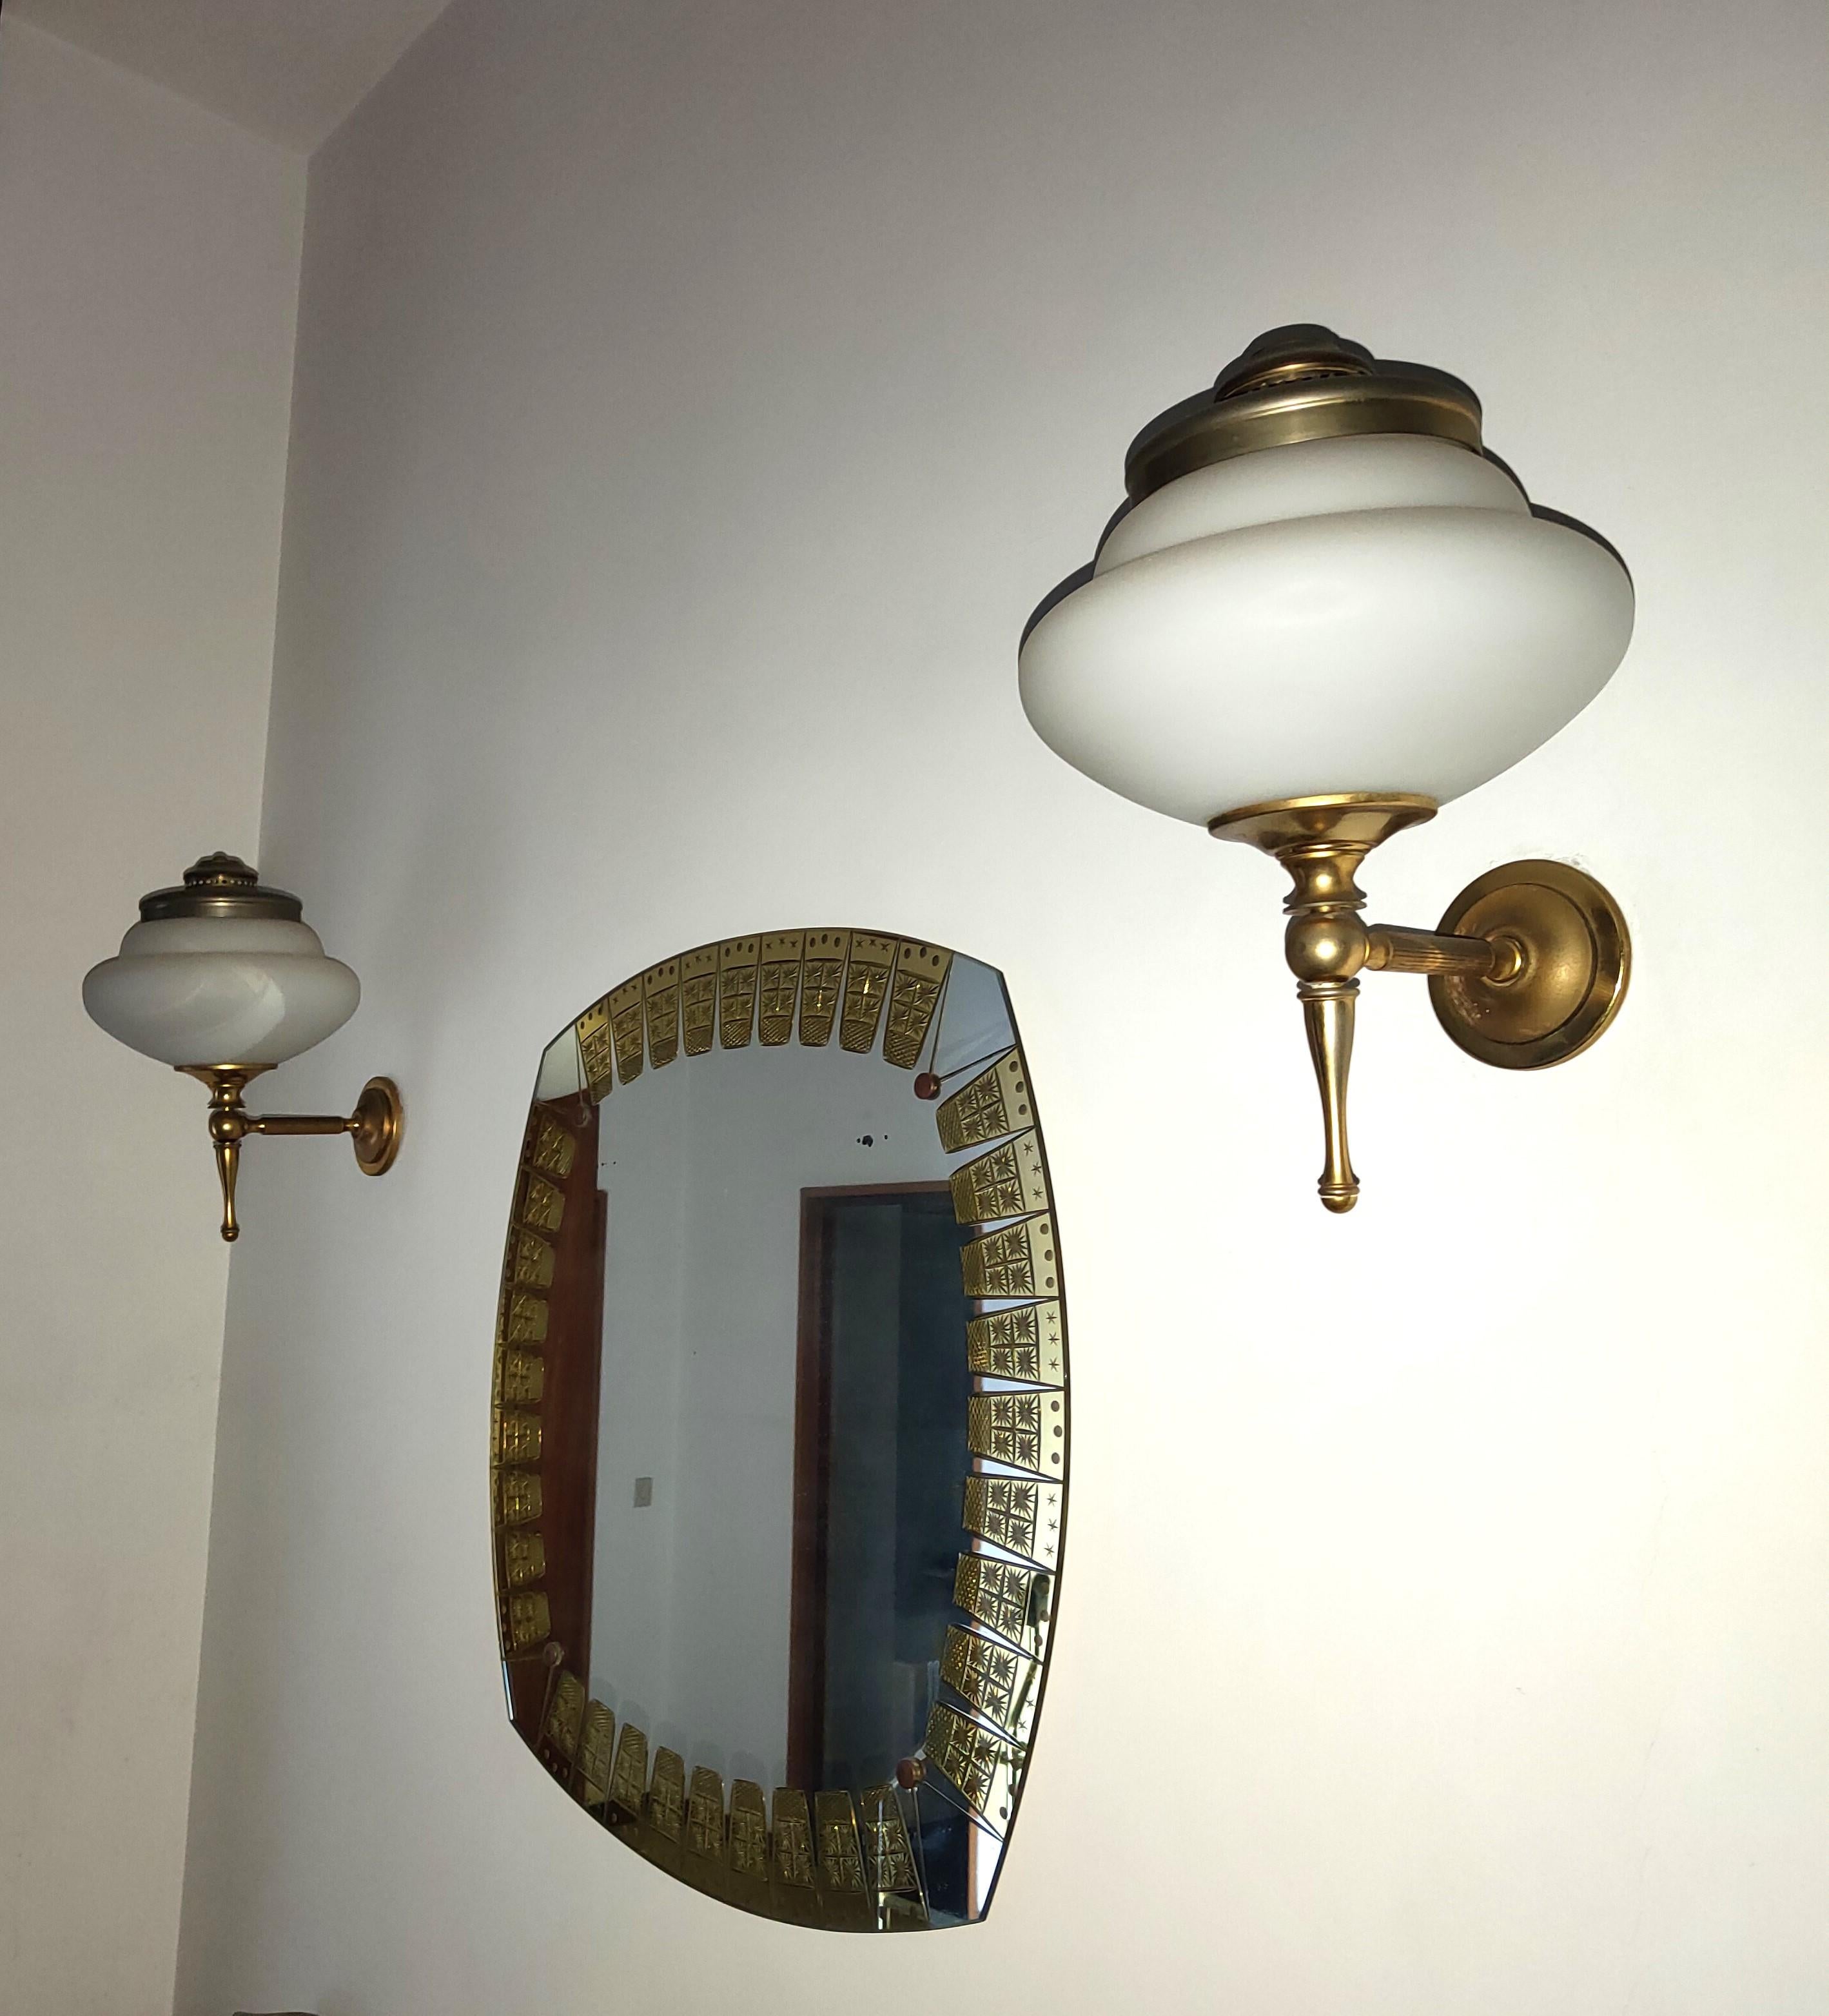 Wunderschönes Paar Wandleuchter, 1950 von Guglielmo Ulrich für Filc Milano entworfen, aus Messing mit einem Schirm aus weißem Opalglas.

wunderbar für alle, die ihrer Wohnung einen Hauch von Eleganz und Besonderheit verleihen wollen.

Höhe cm 40,